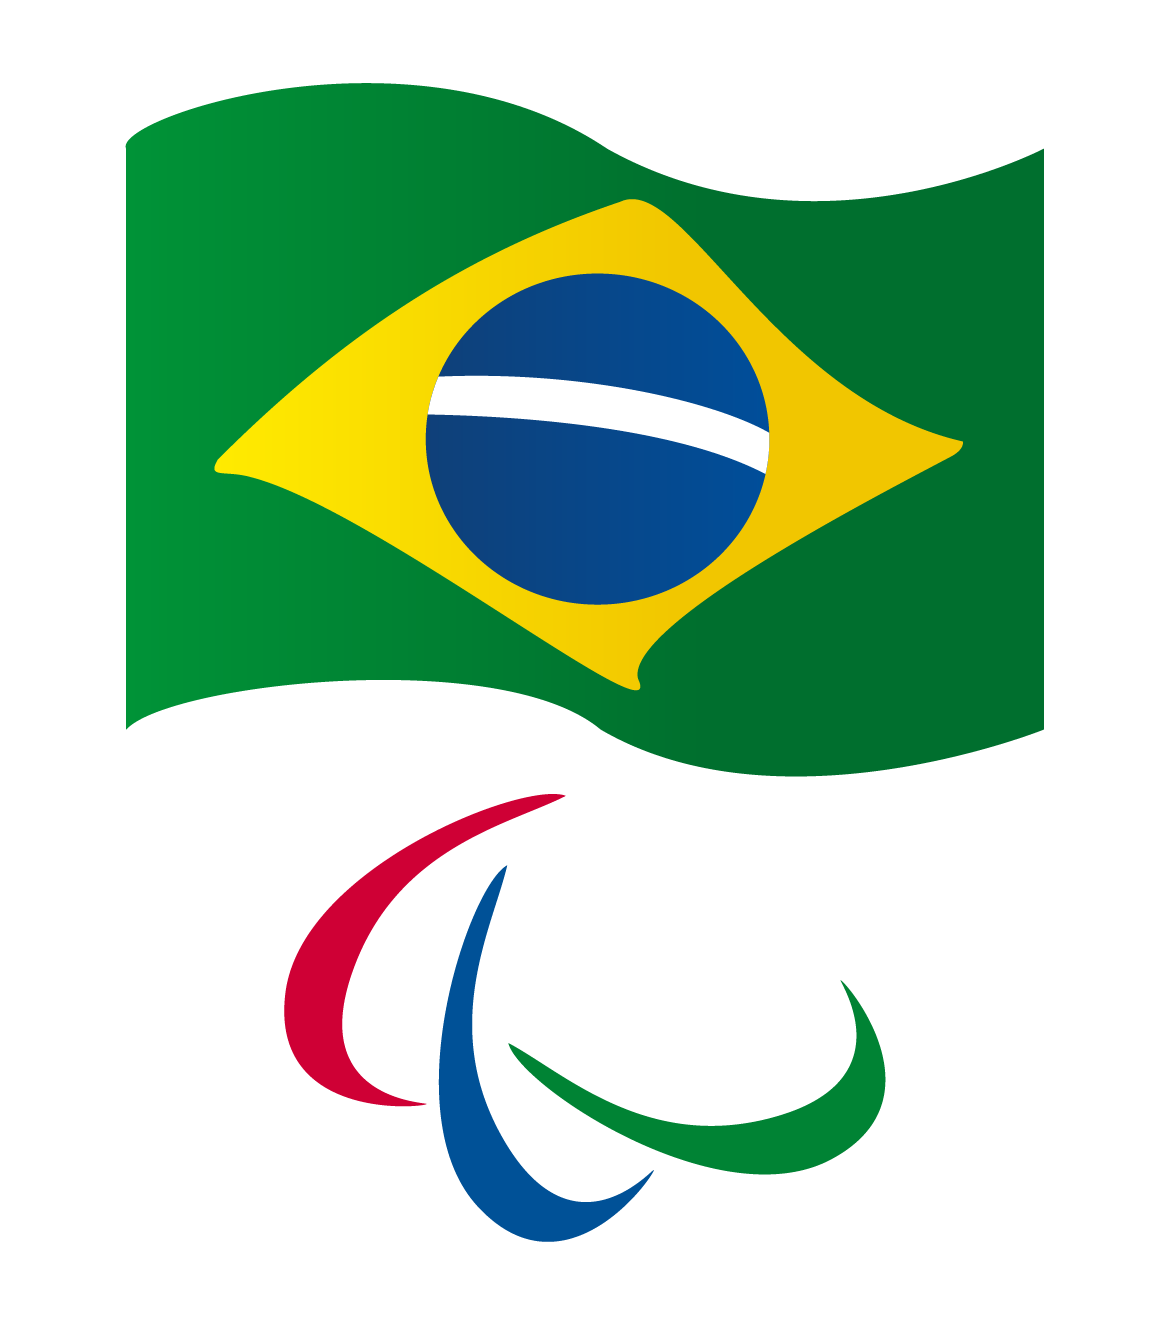 Logo do Comitê Paralímpico Brasileiro. Acima, a bandeira do Brasil. Abaixo, as três curvas que simbolizam o Comitê.